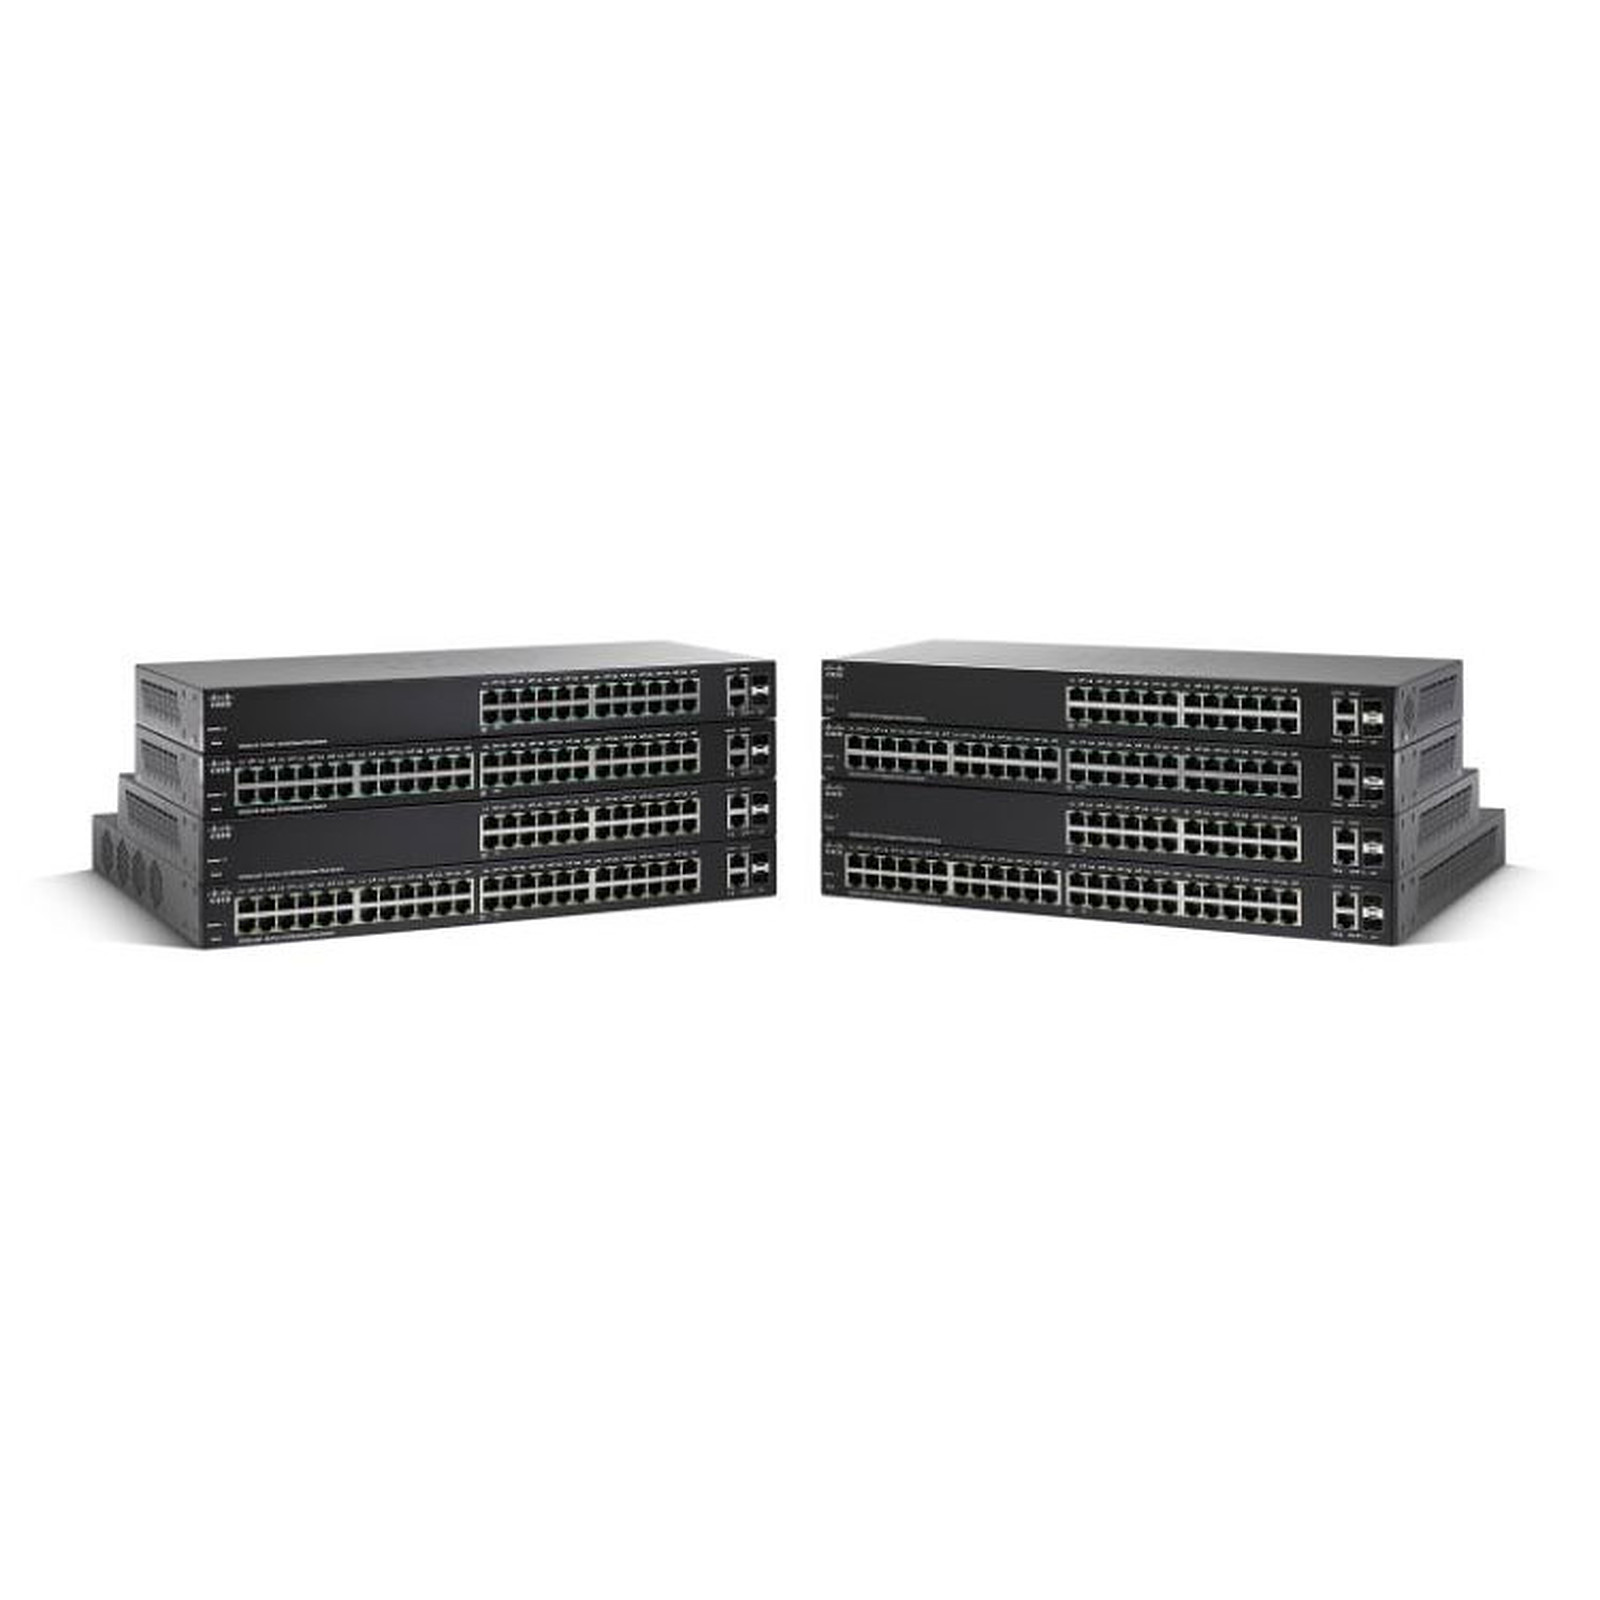 Cisco SG220-50 - Switch Cisco Systems